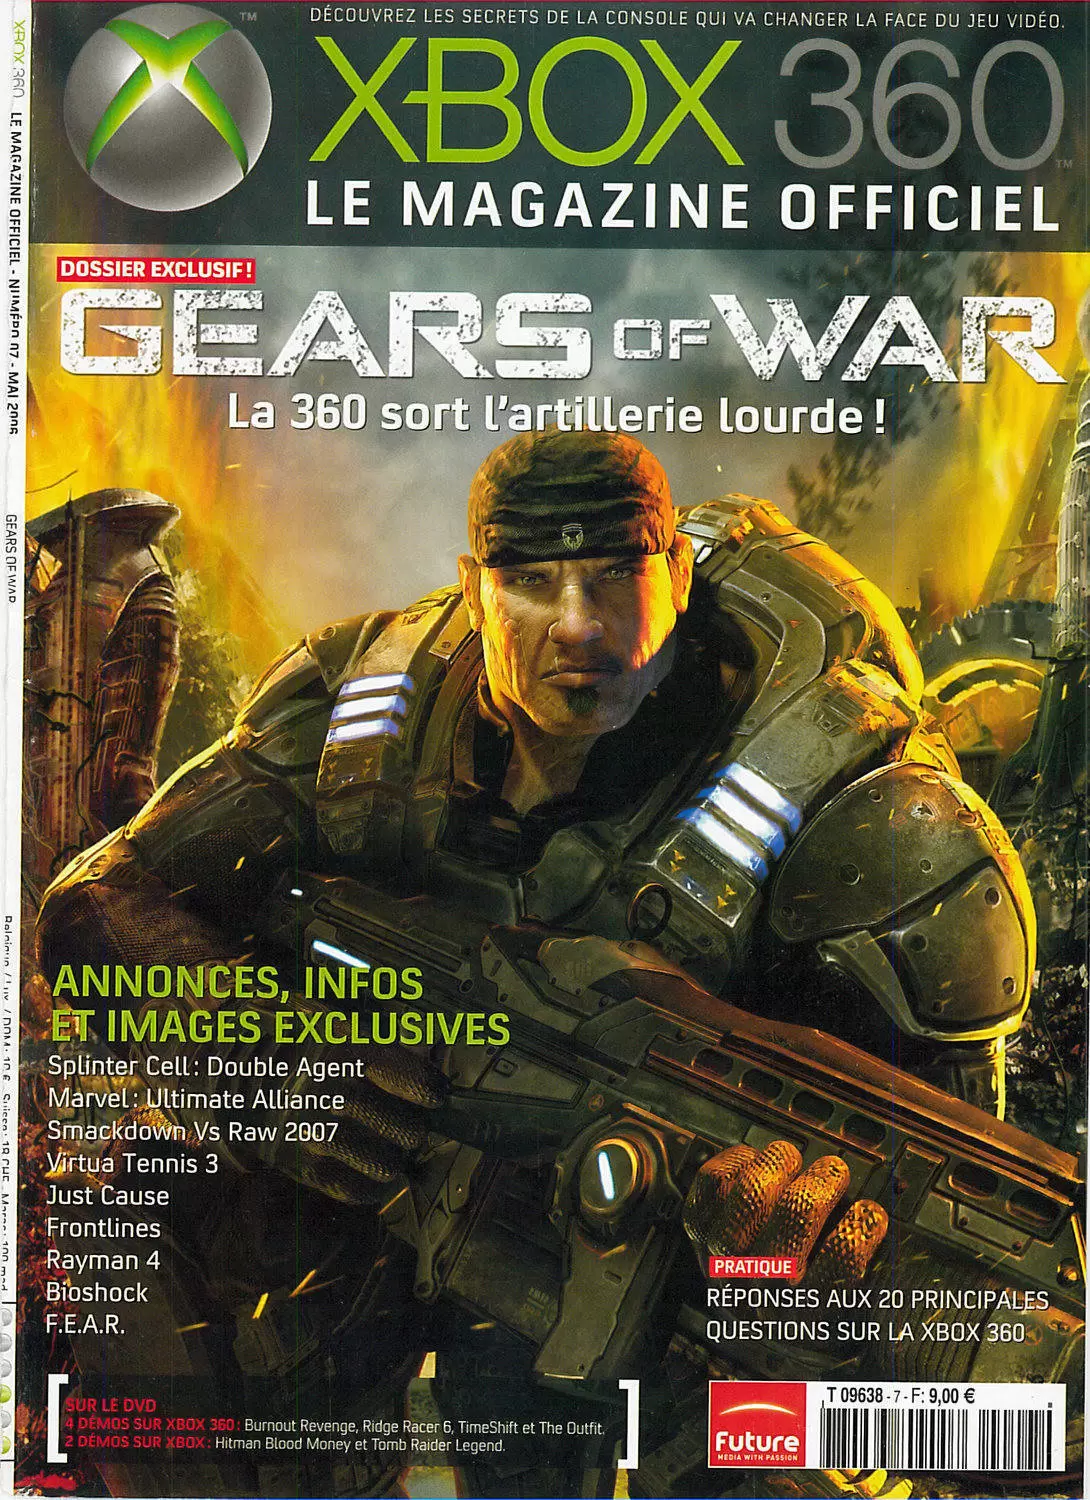 Xbox 360 : Le Magazine Officiel - Xbox 360 : Le Magazine Officiel n°7